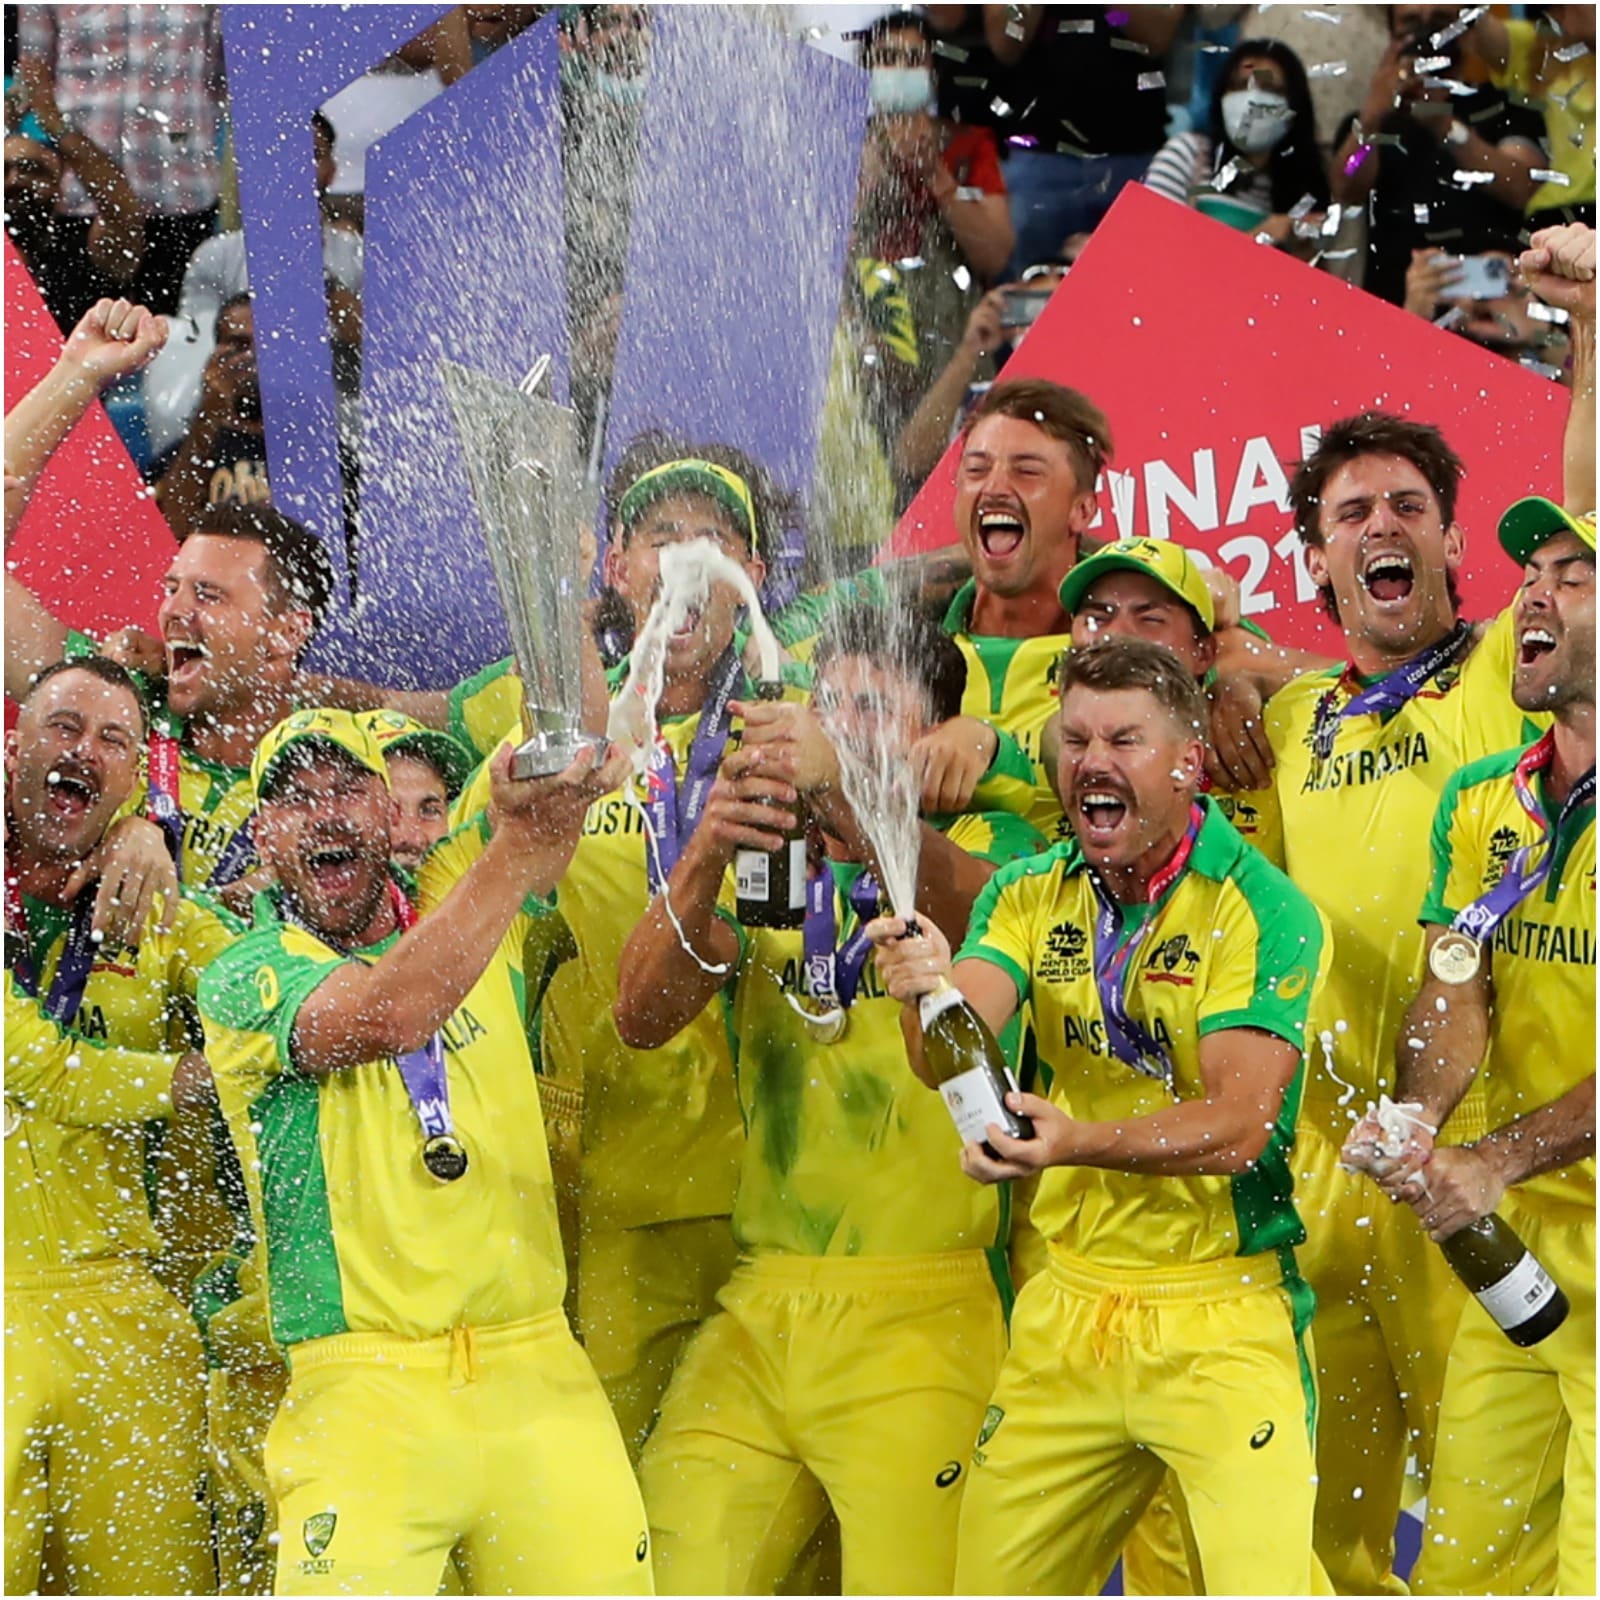  टी20 वर्ल्ड कप (T20 World Cup 2021) का मौजूदा सीजन खत्म हो चुका है. ऑस्ट्रेलिया (Australia) की टीम टूर्नामेंट की नई चैंपियन बनी. उसने फाइनल में न्यूजीलैंड को हराया. टूर्नामेंट में ऑस्ट्रेलिया के एक दर्जन खिलाड़ियों ने शानदार प्रदर्शन किया. इन पर आईपीएल 2022 (IPL 2022) के मेगा ऑक्शन पर करोड़ों रुपए की बोली लग सकती है. (AP)